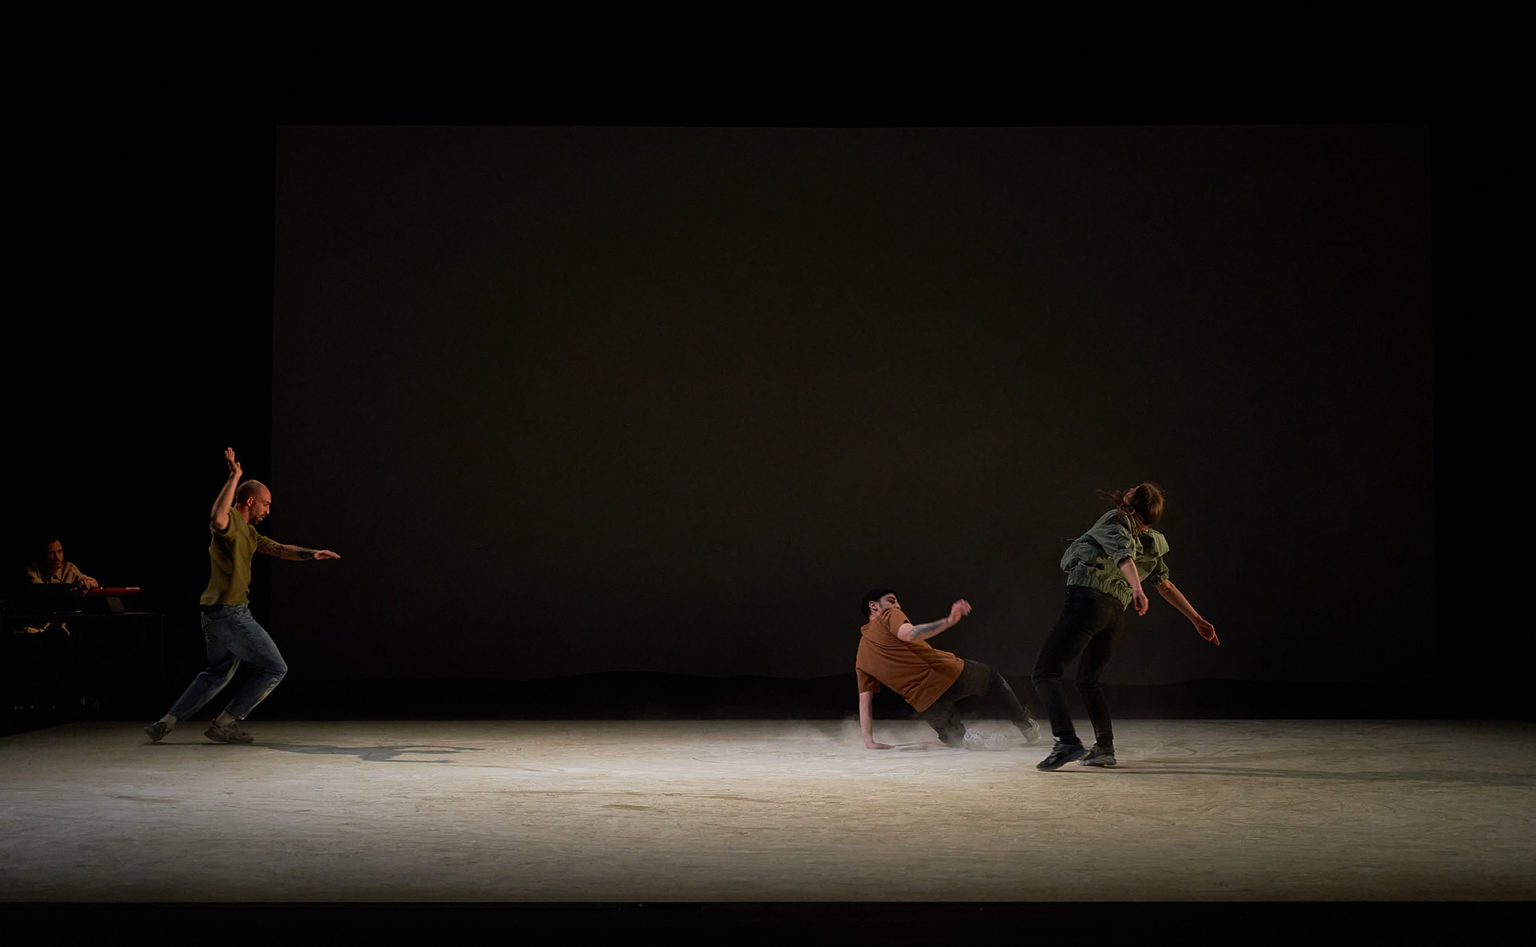 Photo du spectacle "Paysage" où l'on voit les 3 danseurs au milieu du grand plateau vide. Le sol est recouvert d'une poussière. L'un danse au sol.